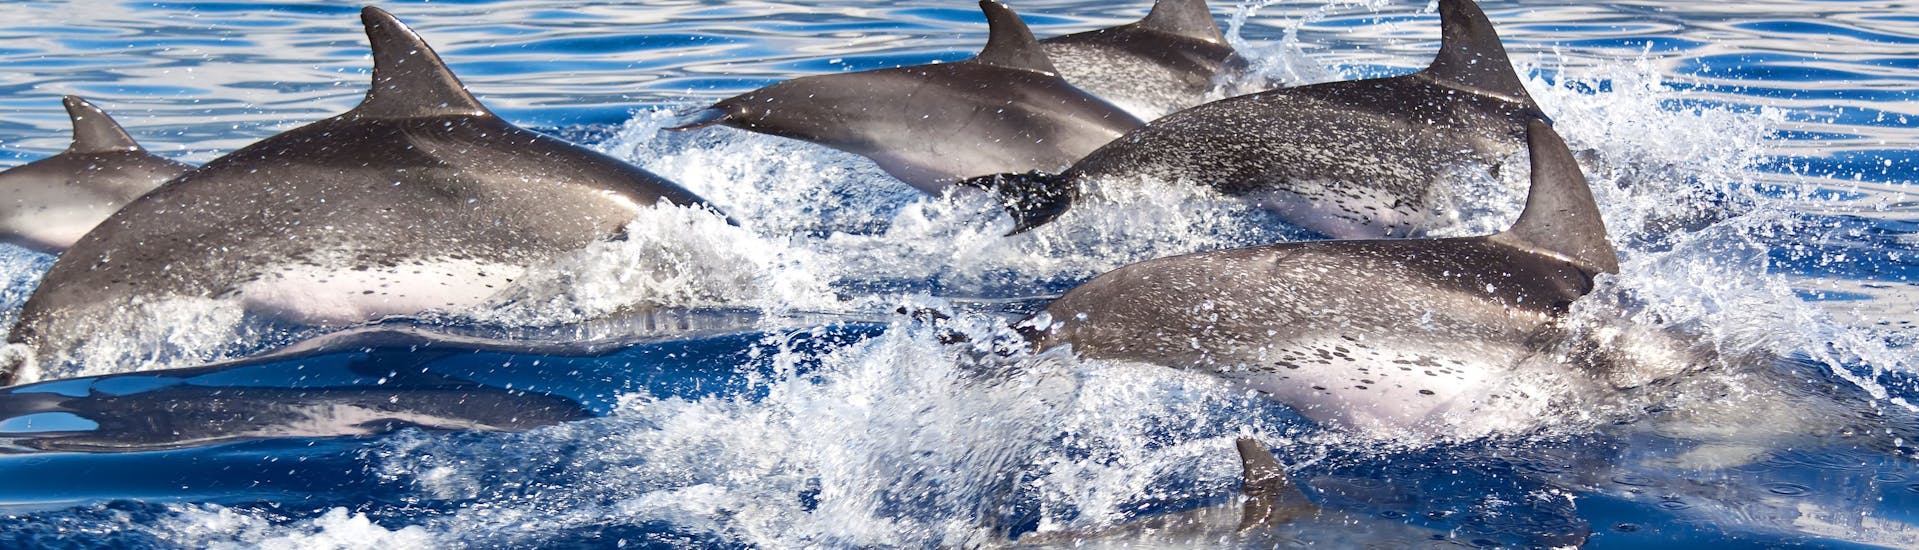 Un grupo de delfines salta sobre el agua durante el Paseo en catamarán desde Santa Ponsa y Andratx con avistamiento de delfines con Cormoran Cruises Paguera.